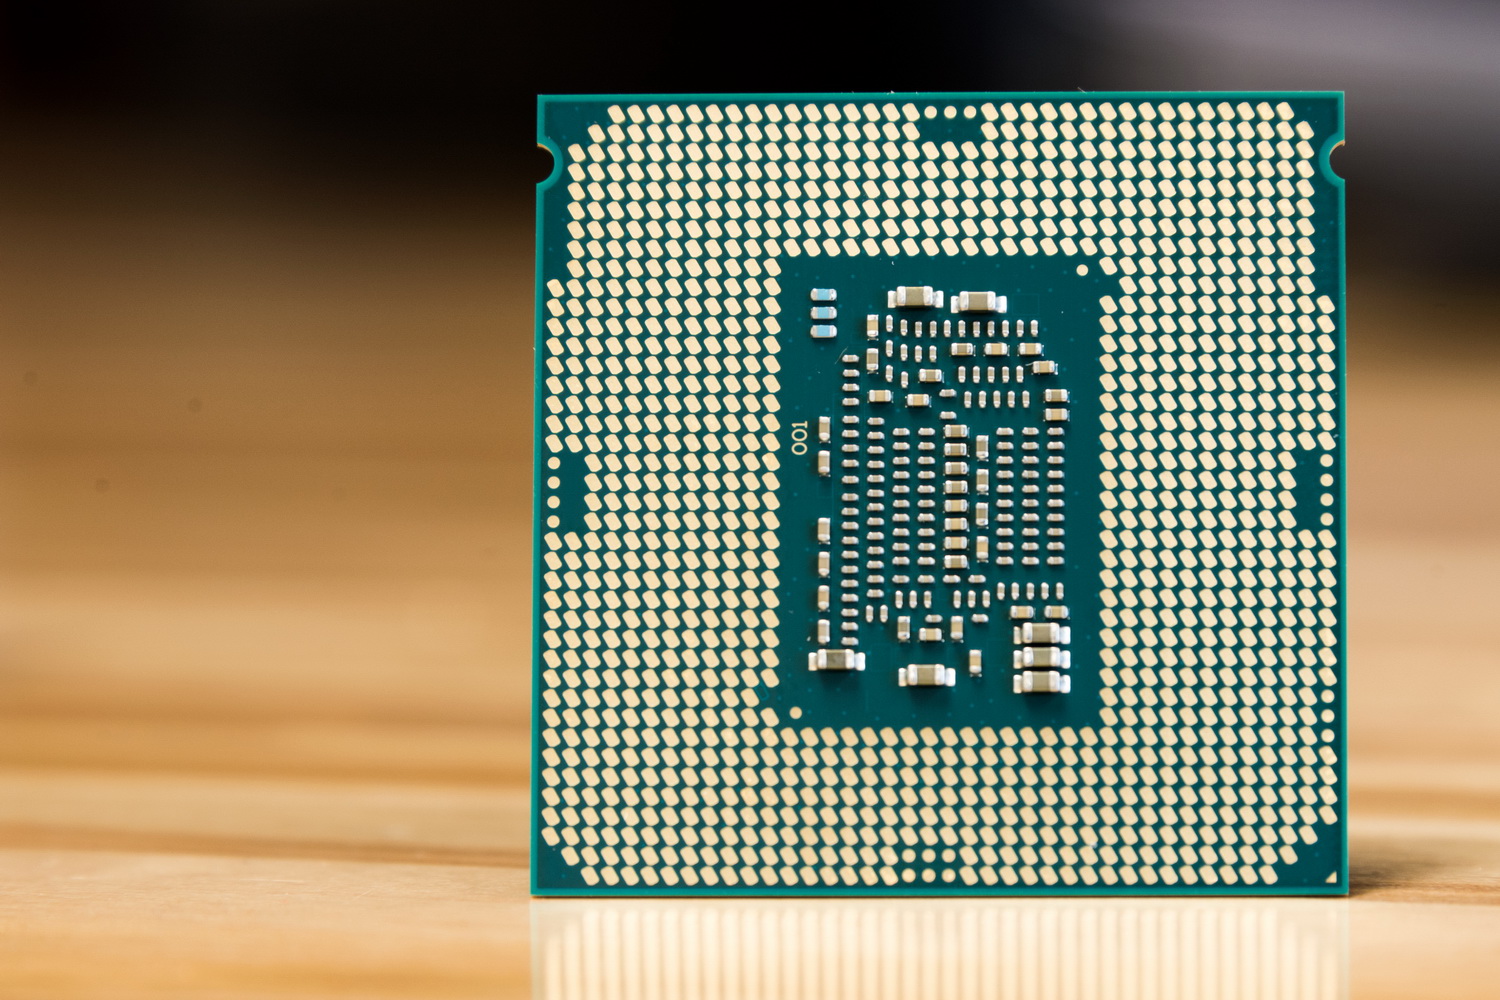 Almohadillas en la parte inferior de la CPU Intel.